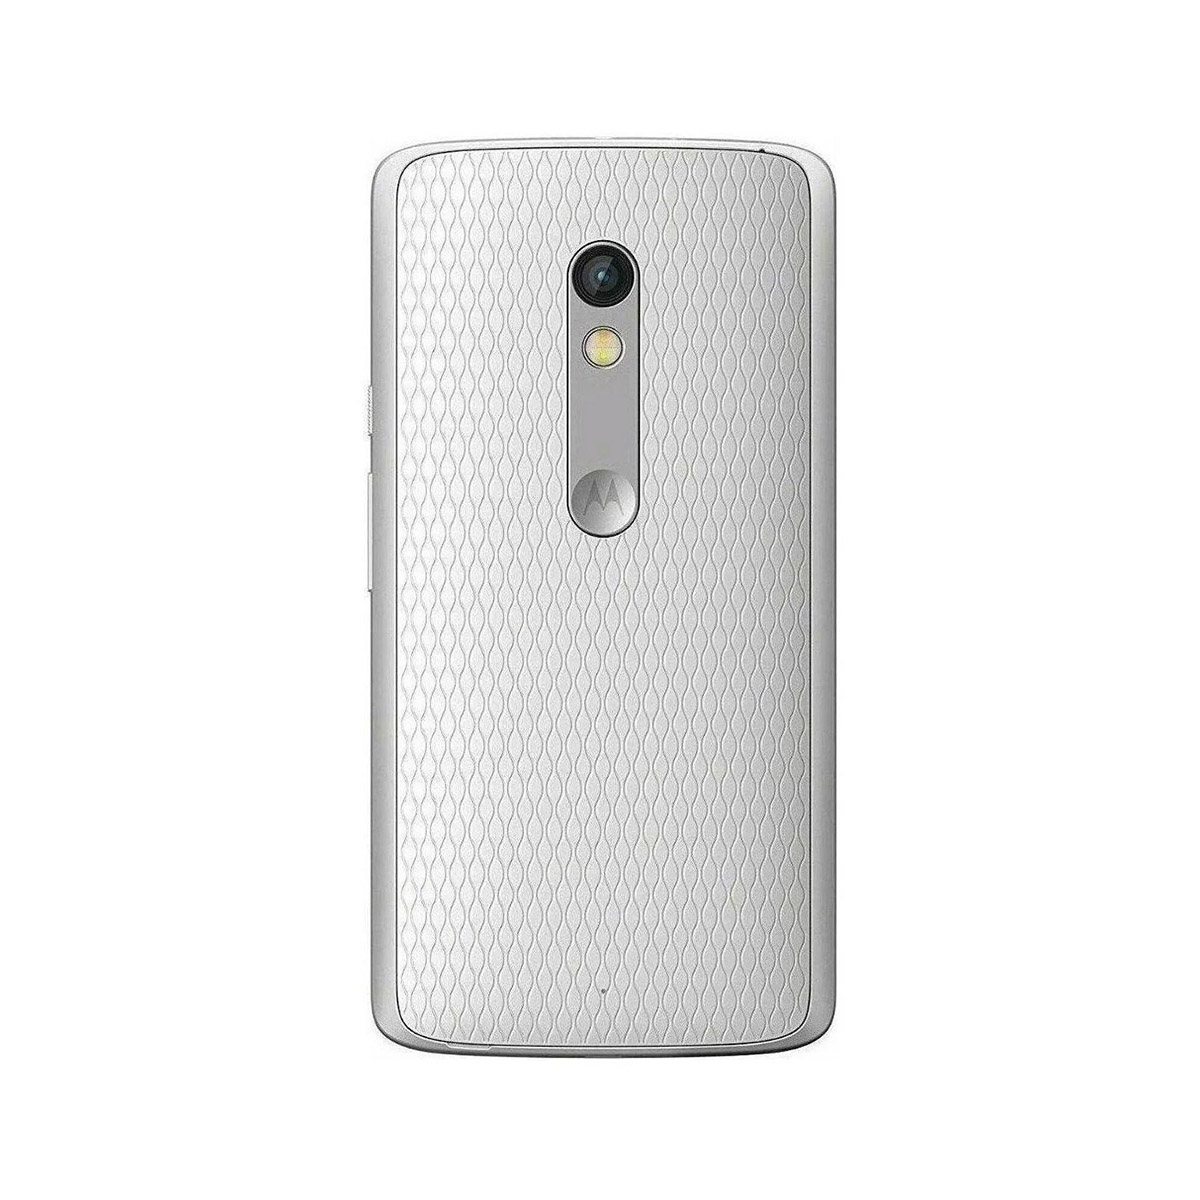 Motorola Moto X Play Dual Xt1563 32gb 4g Seminovo